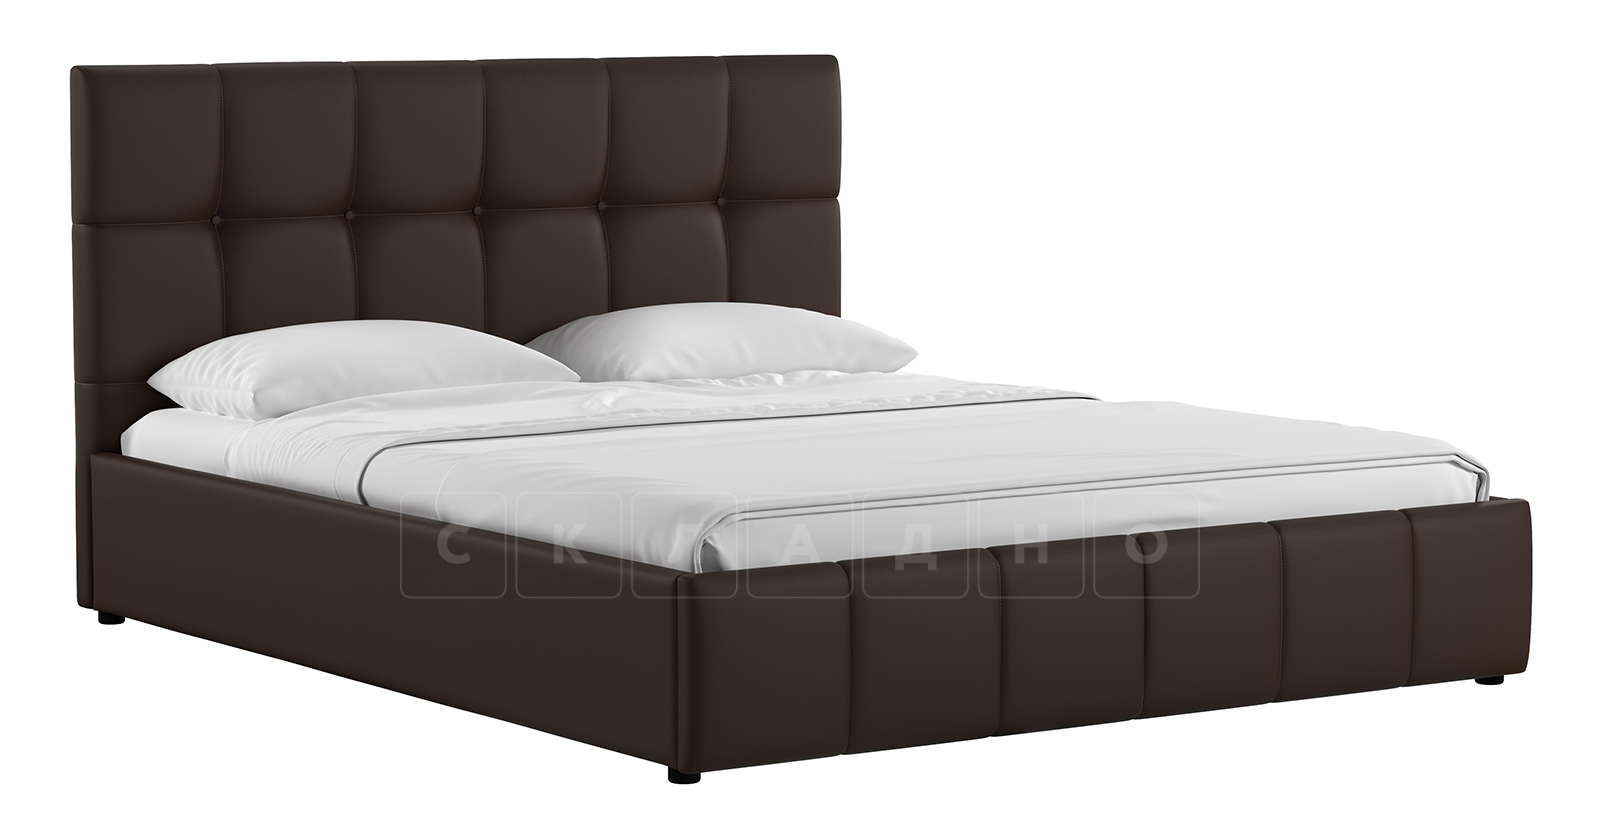 Мягкая кровать Хлоя 160 см шоколад с подъемным механизмом фото 1 | интернет-магазин Складно